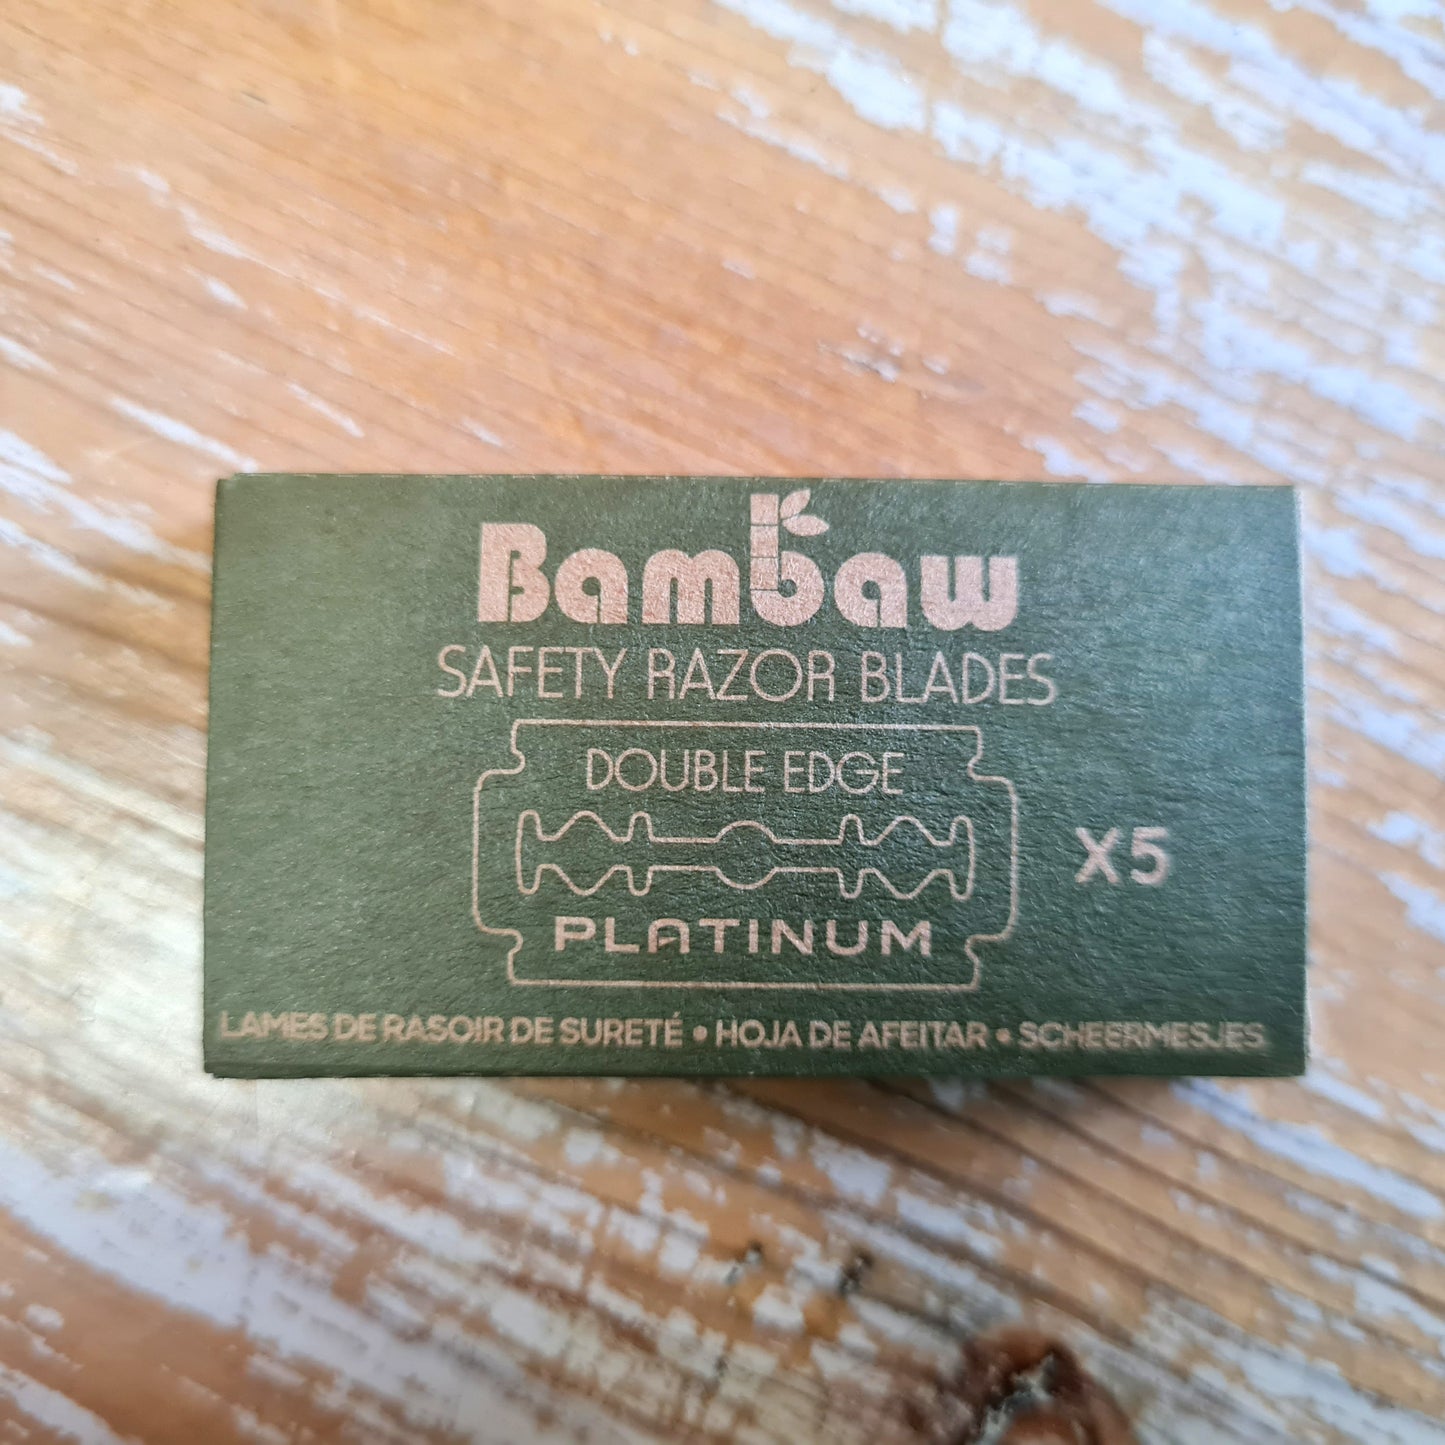 Bambaw safety razor blades